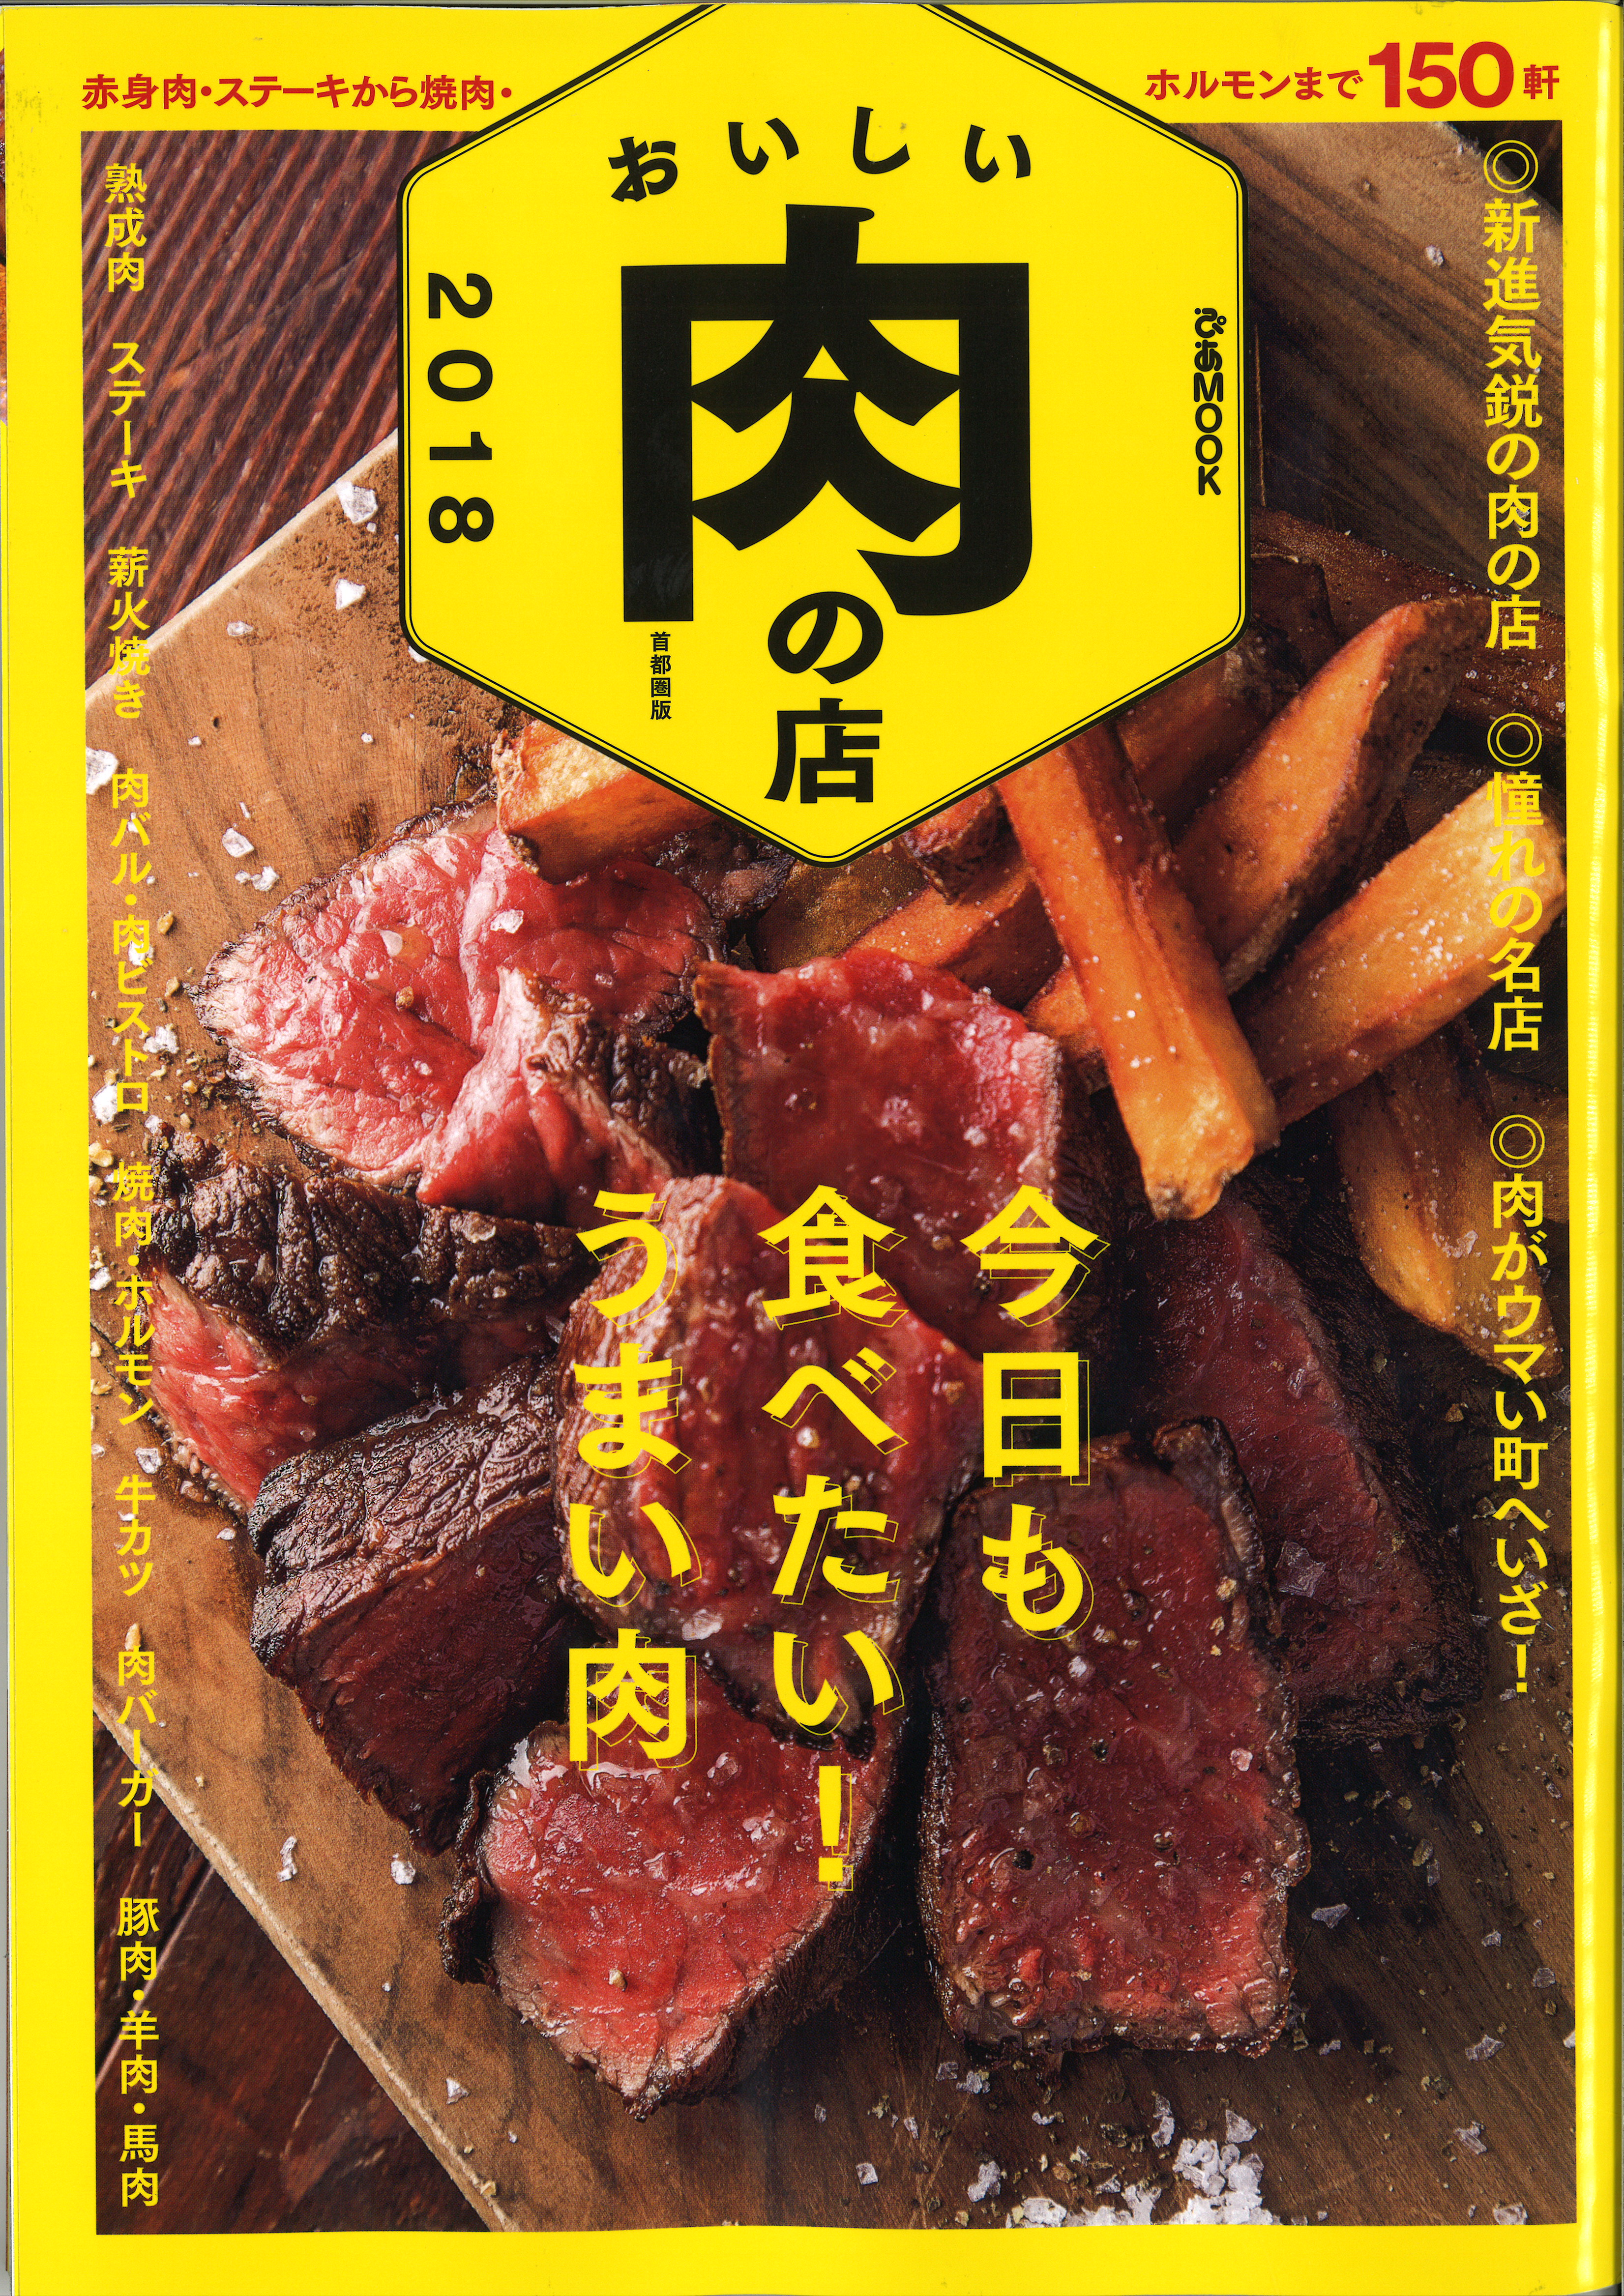 170701おいしい肉の店(GB銀座)_ページ_1